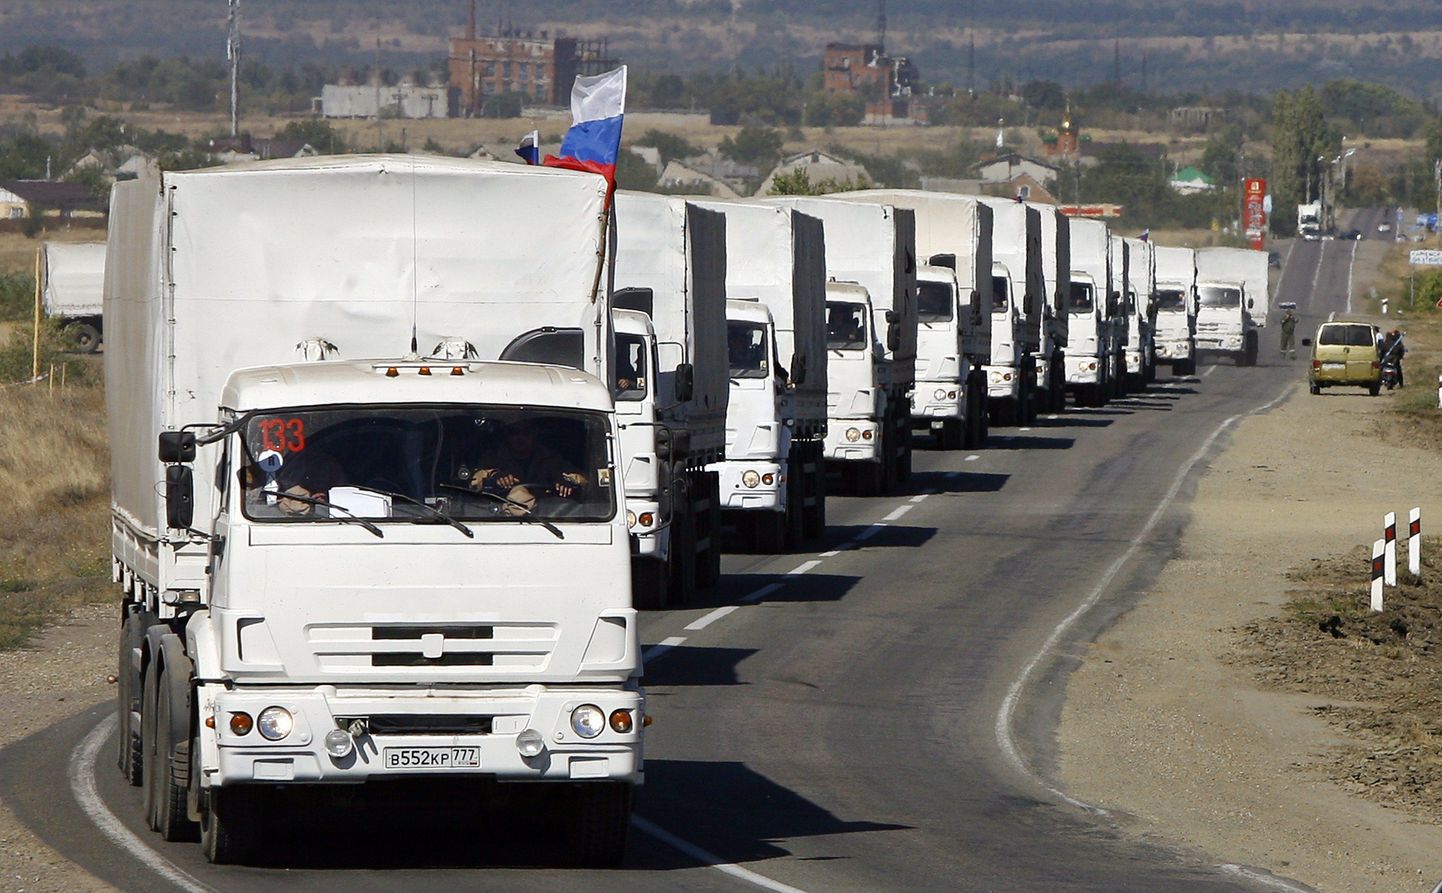 Vene abikolonn täna hommikul valmis Ukrainasse sisenema Donetsk-Izvarino piiripunktis.